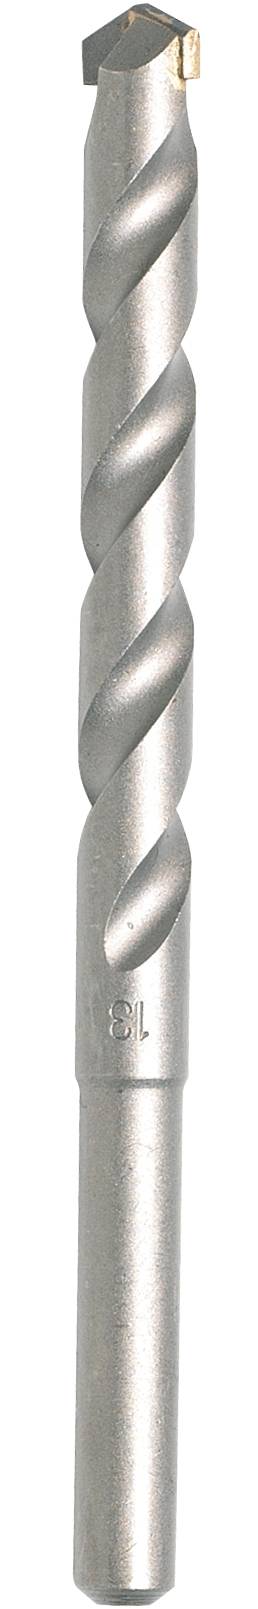 MAKITA Hartmetall Stein-Spiralbohrer 3 mm Makita D-05228 Gesamtlänge 60 mm Zylinderschaft 1 St.